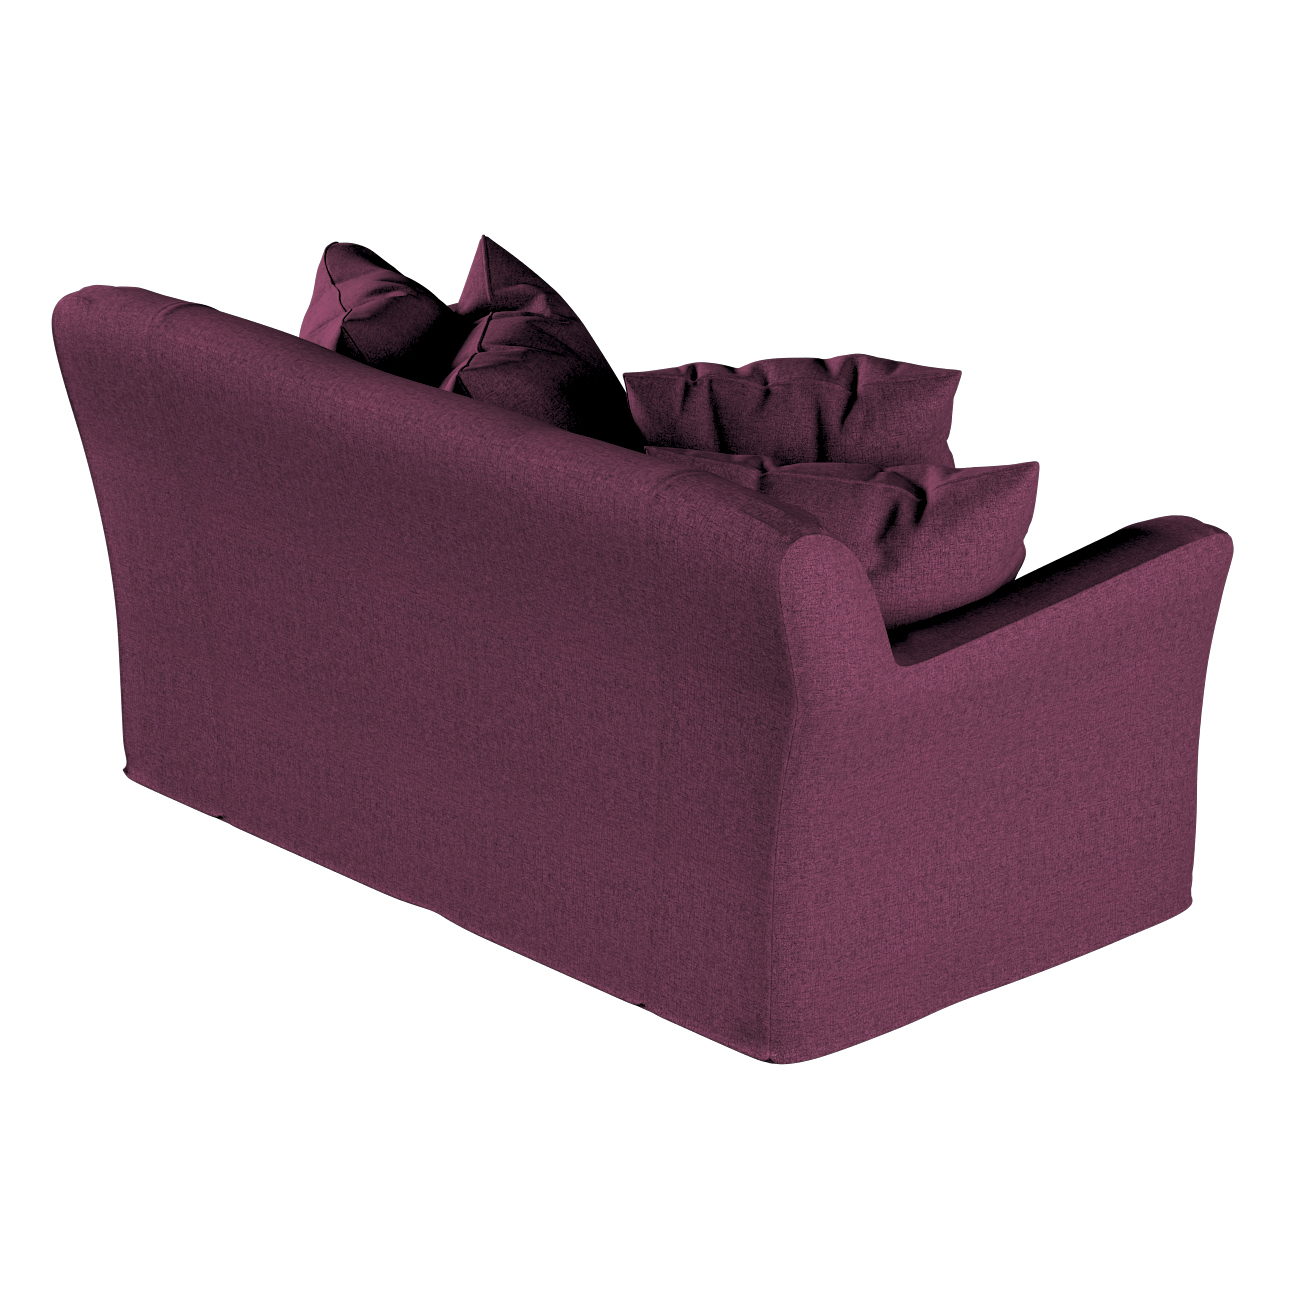 Bezug für Tomelilla 2-Sitzer Sofa nicht ausklappbar, pflaumenviolett, Sofah günstig online kaufen